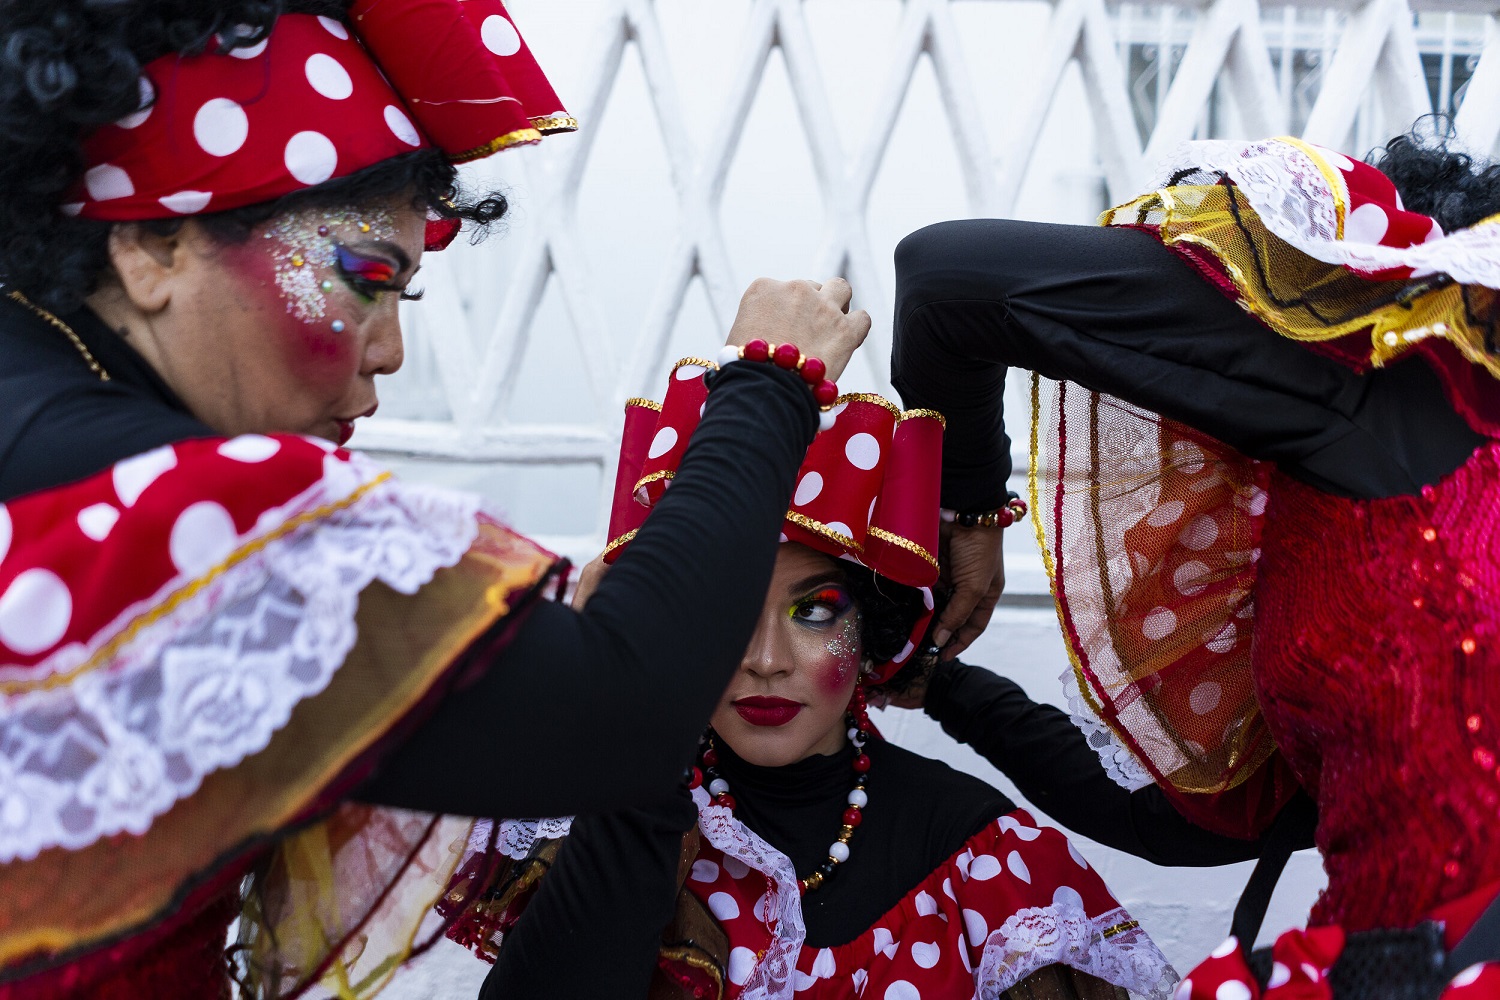 Integrantes de la compañía Negritas Puloy del carnaval de Barranquilla ayudan a una bailarina a colocarse el disfraz. CHARLIE CORDERO